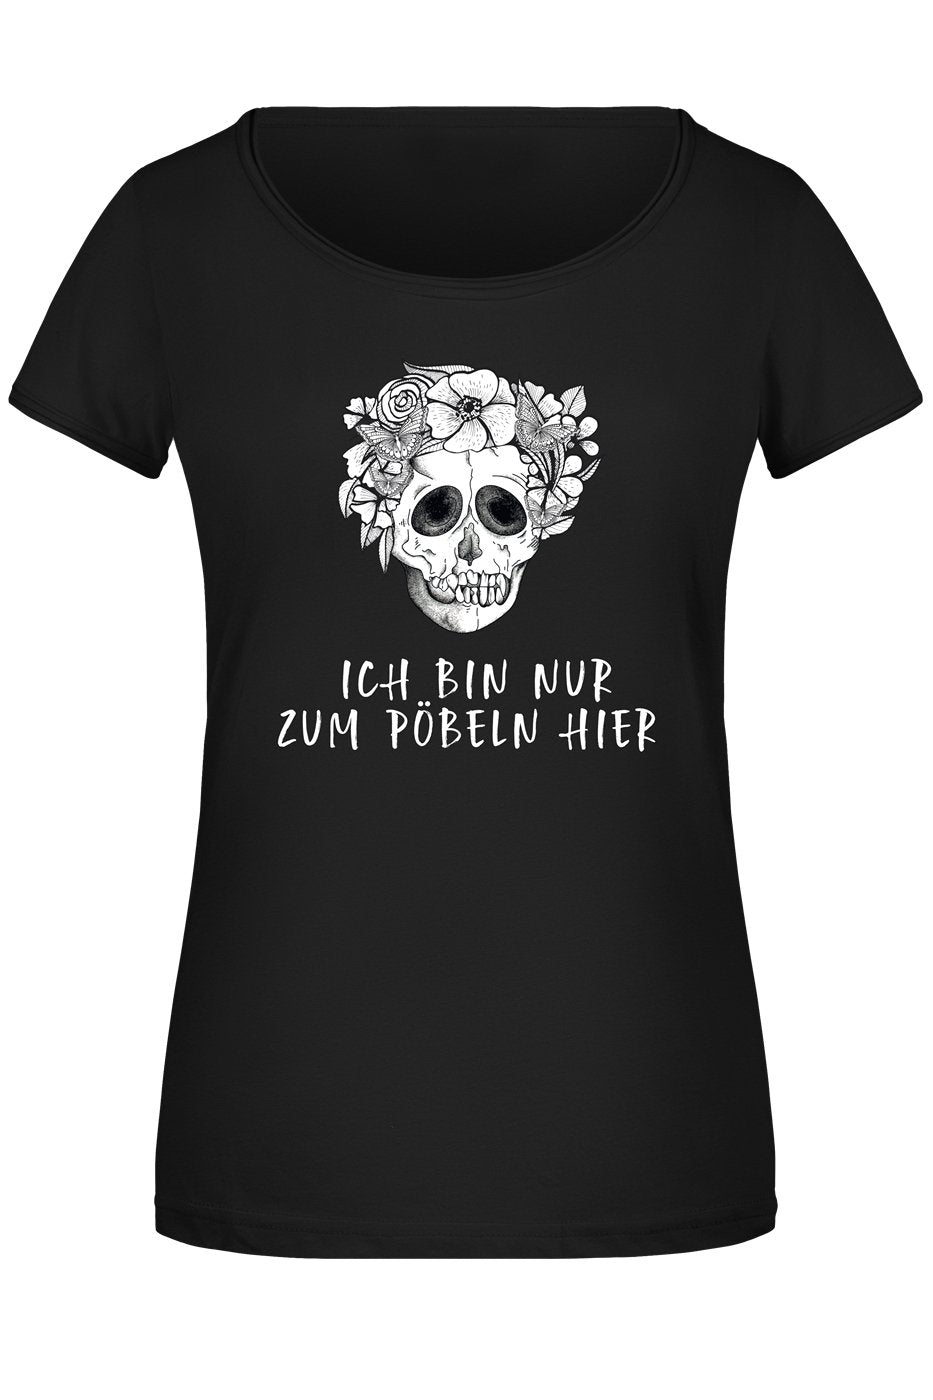 Bild: T-Shirt Damen - Ich bin nur zum Pöbeln hier - Totenkopf Geschenkidee